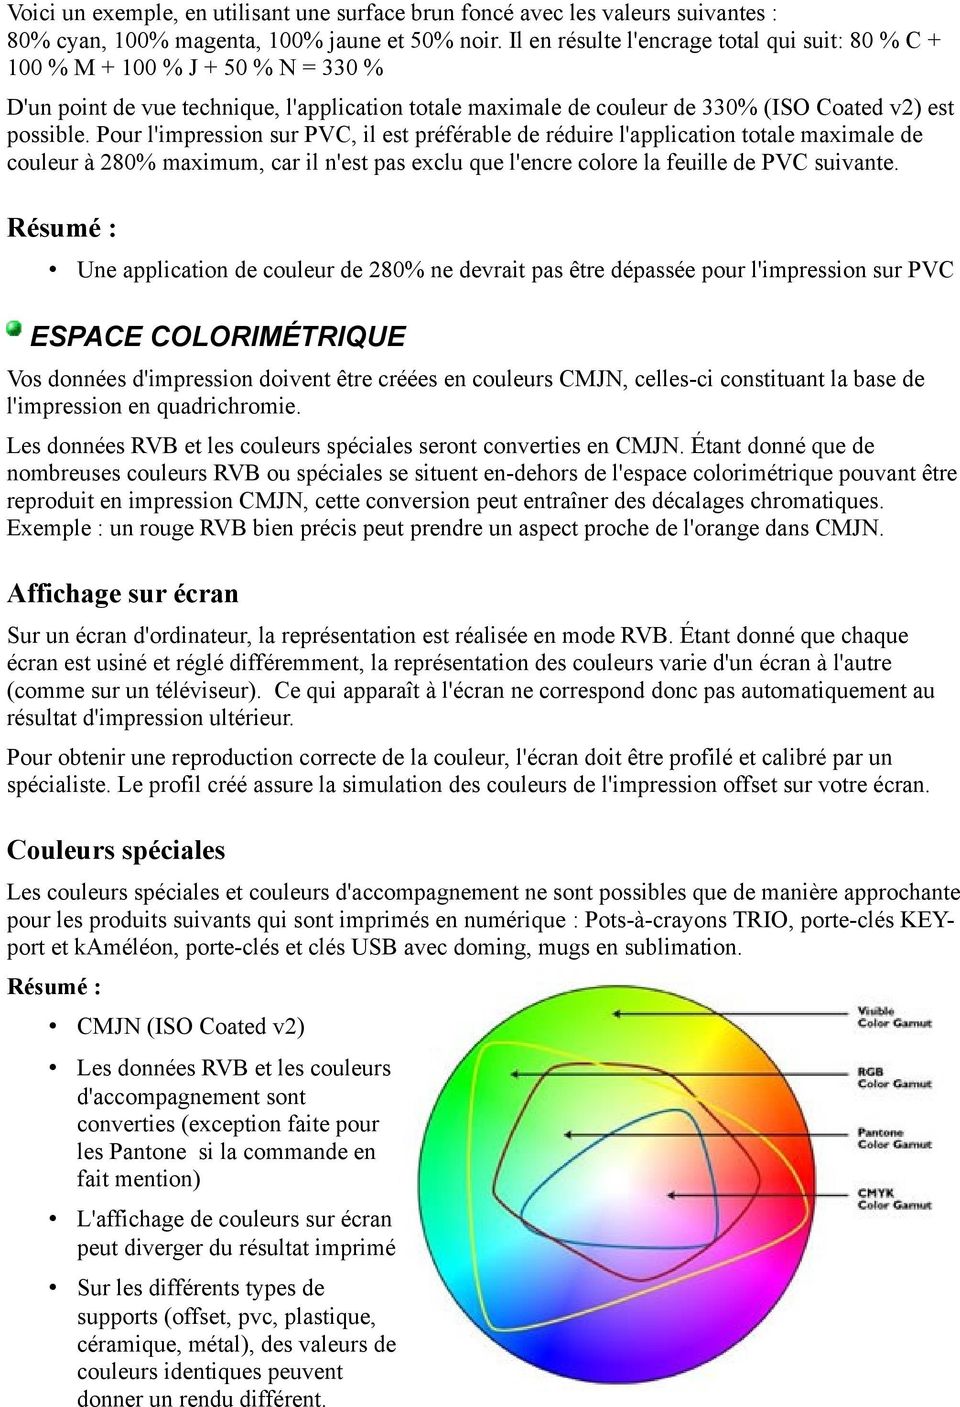 Pour l'impression sur PVC, il est préférable de réduire l'application totale maximale de couleur à 280% maximum, car il n'est pas exclu que l'encre colore la feuille de PVC suivante.